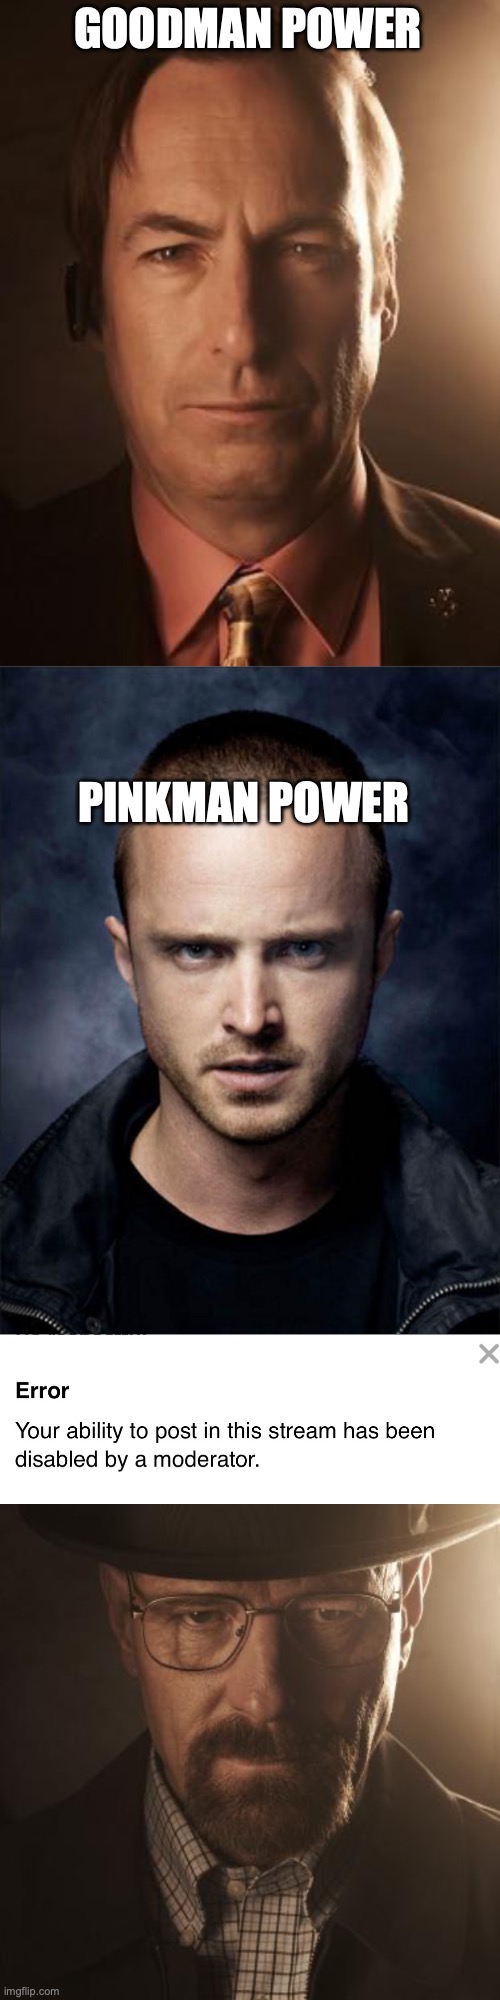 GOODMAN POWER; PINKMAN POWER | image tagged in saul goodman,jesse pinkman,walter white | made w/ Imgflip meme maker